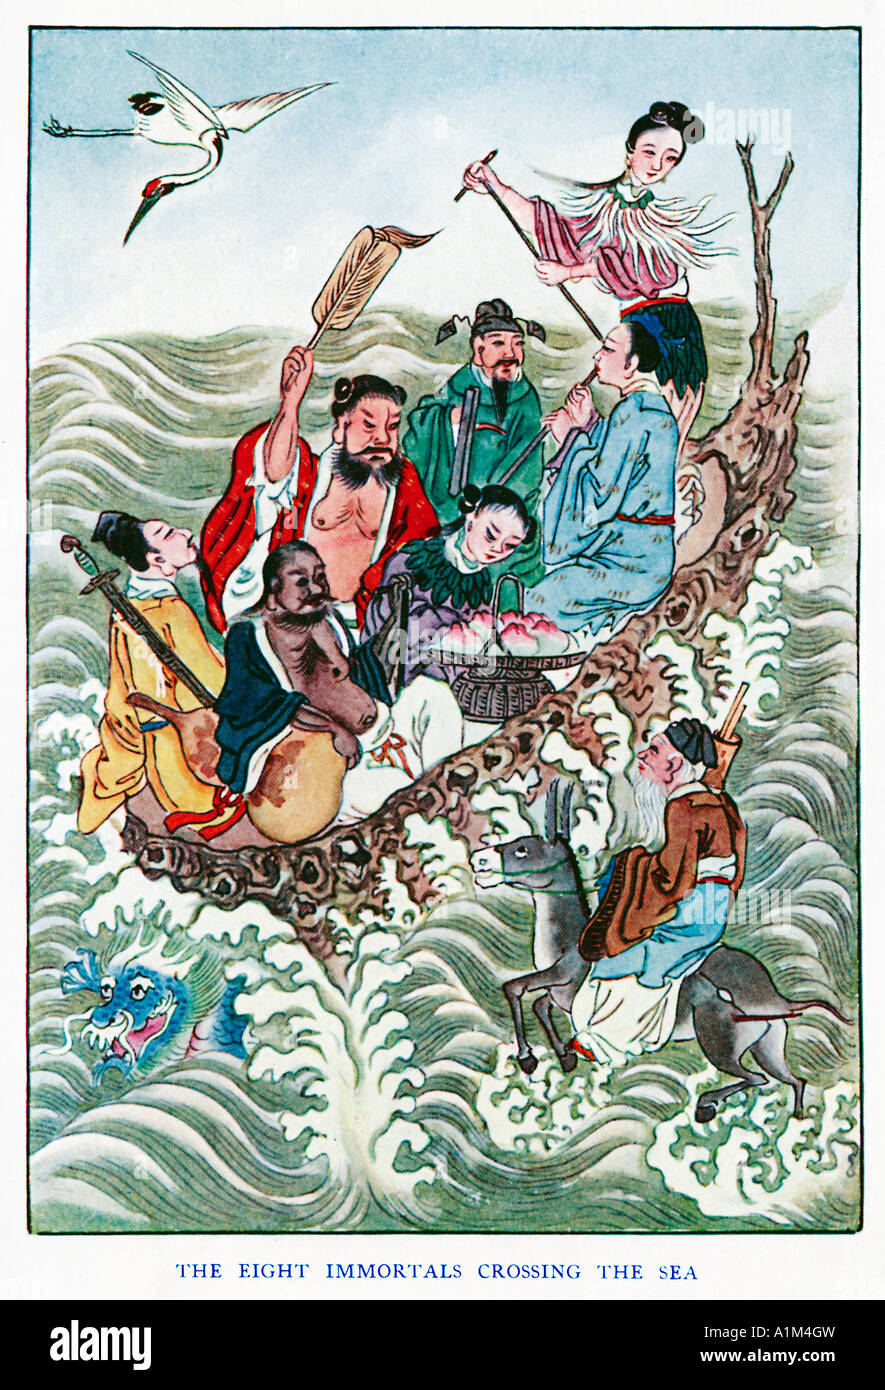 Los Ocho Inmortales cruzando el mar la Pa Hsien kuo hai las deidades taoístas 1920 ilustración por un artista chino Foto de stock